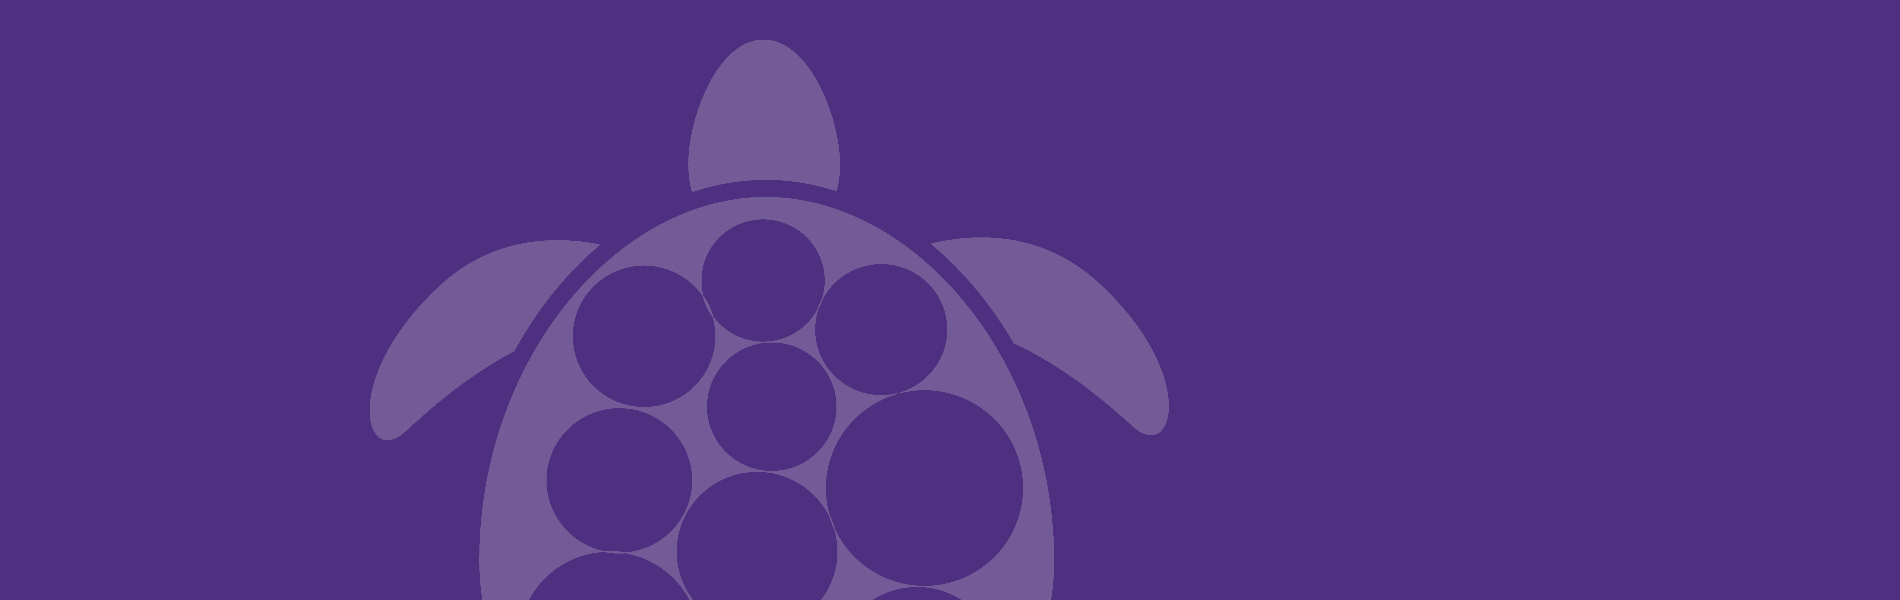 turtle image on purple background